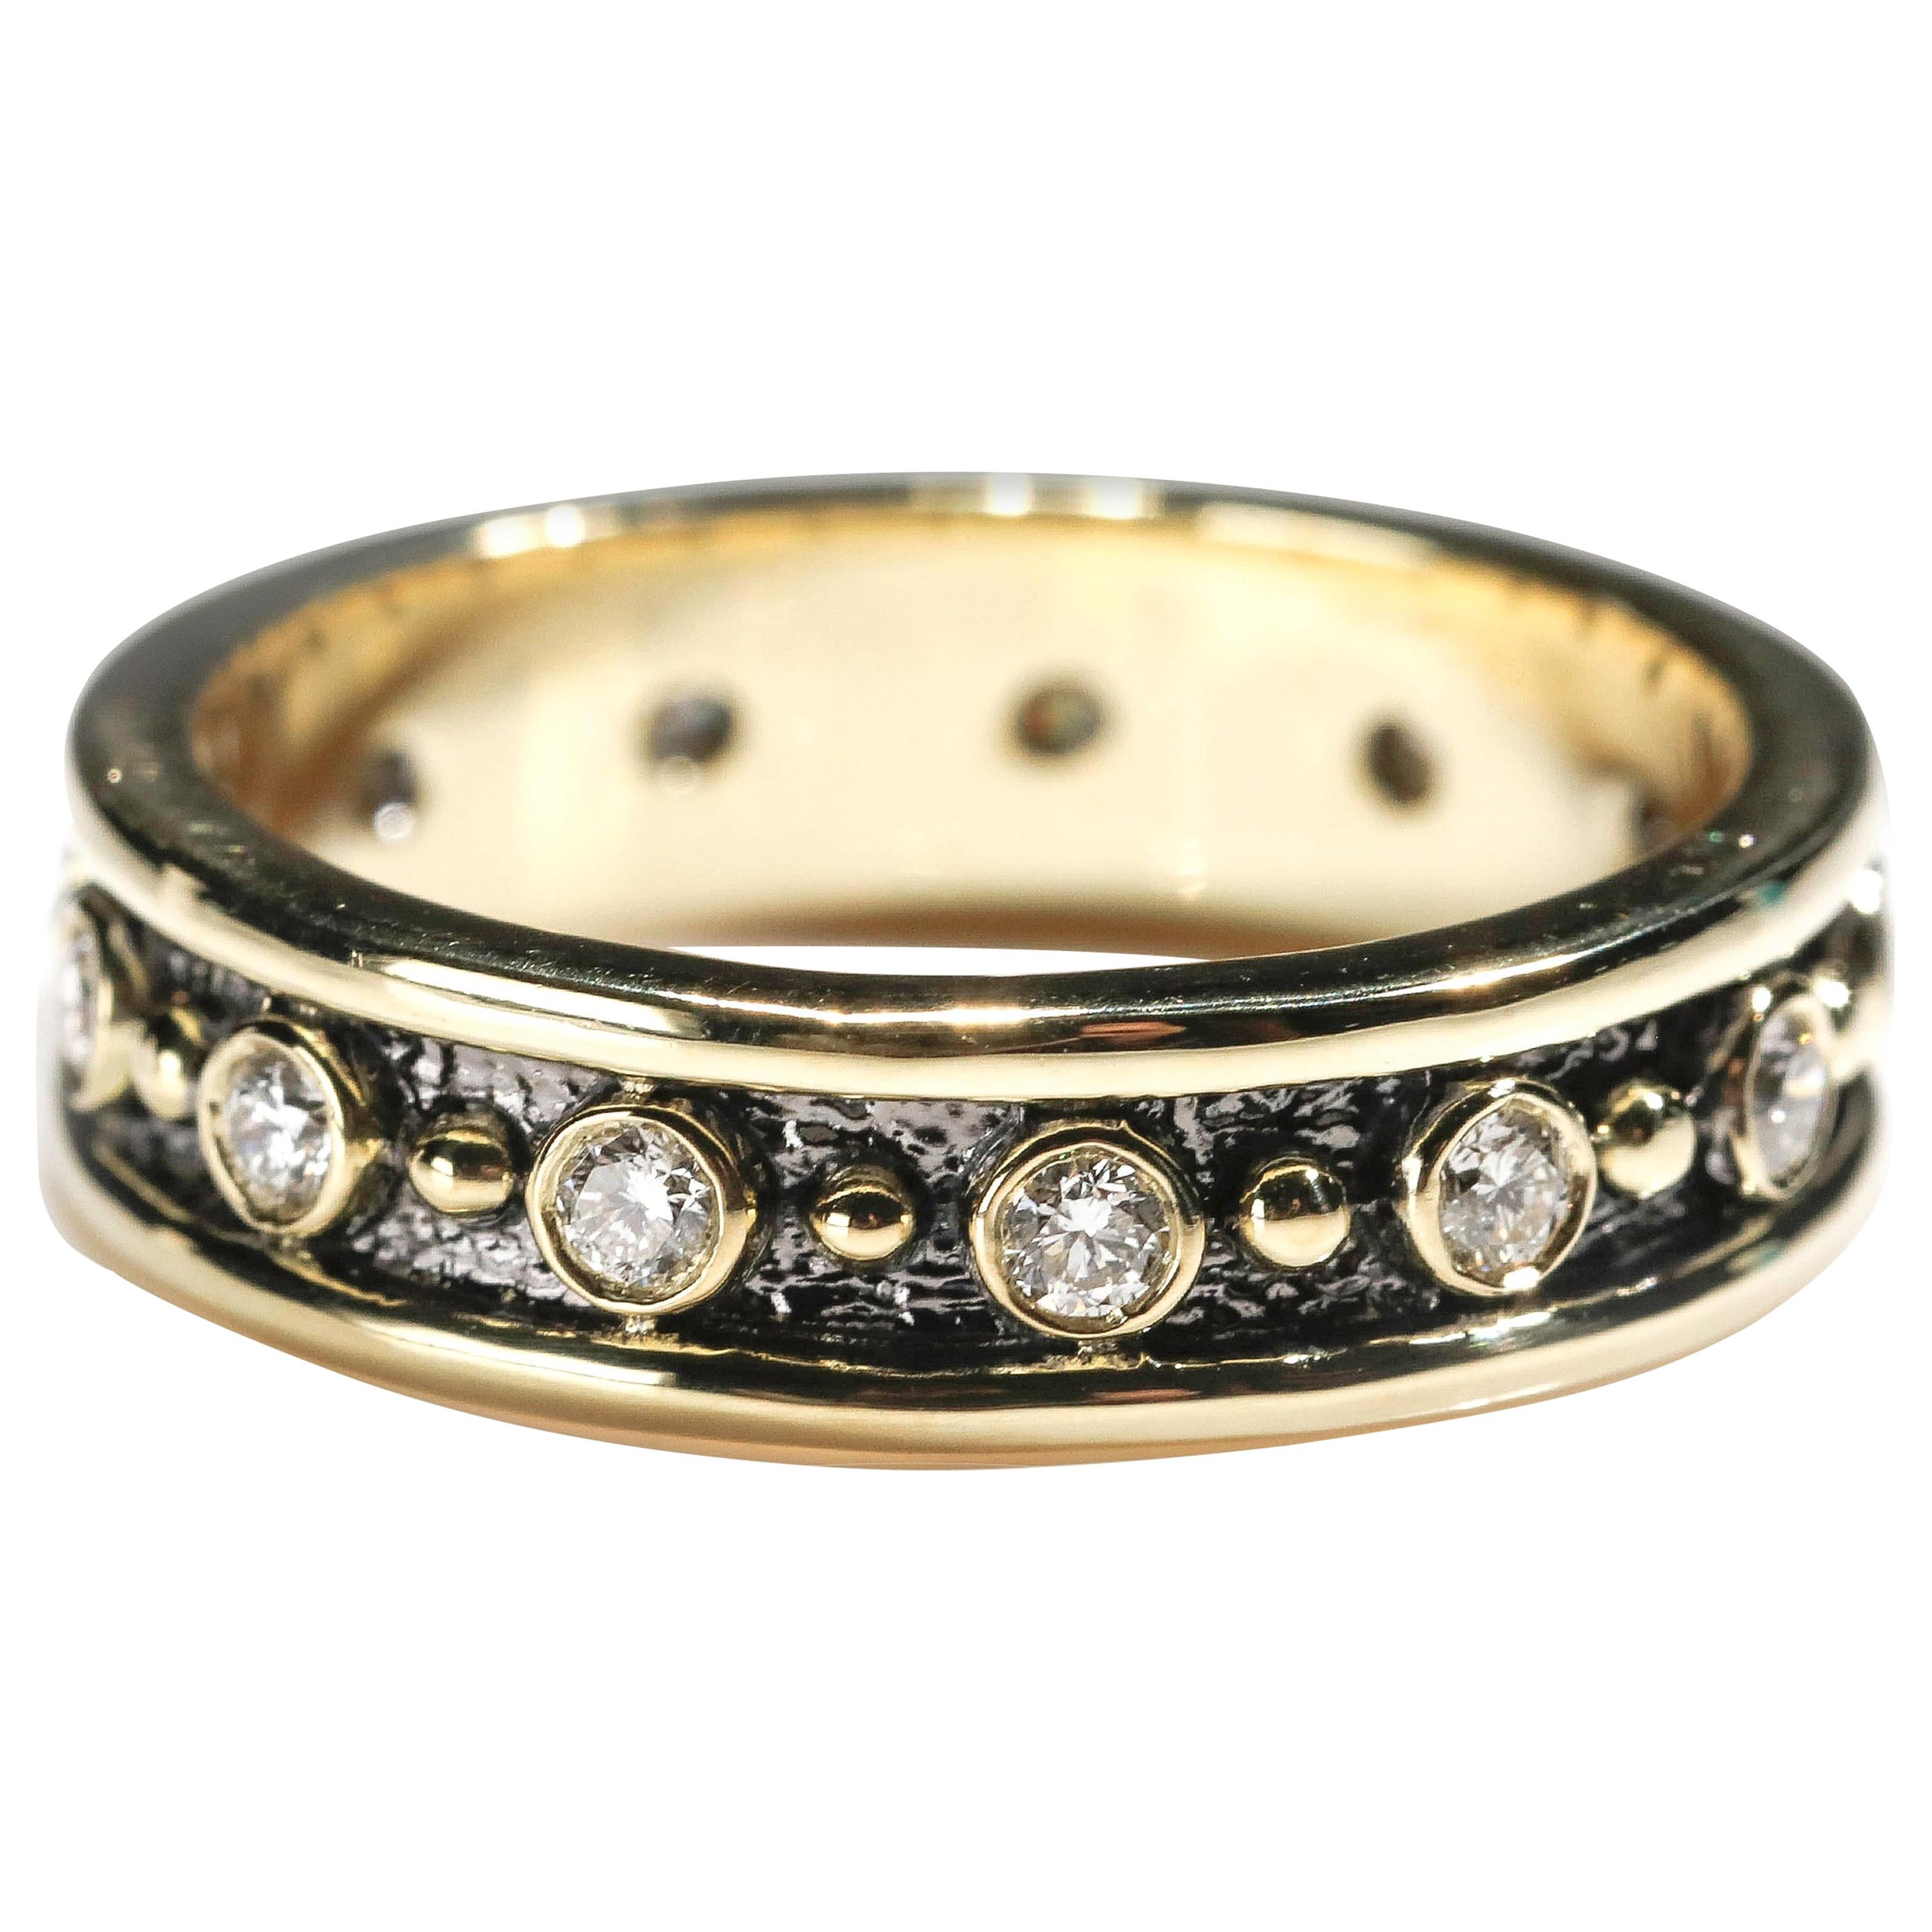 18 Karat Yellow Gold 0.80 Carat Round Cut Diamond Full Band Ring US Size 5